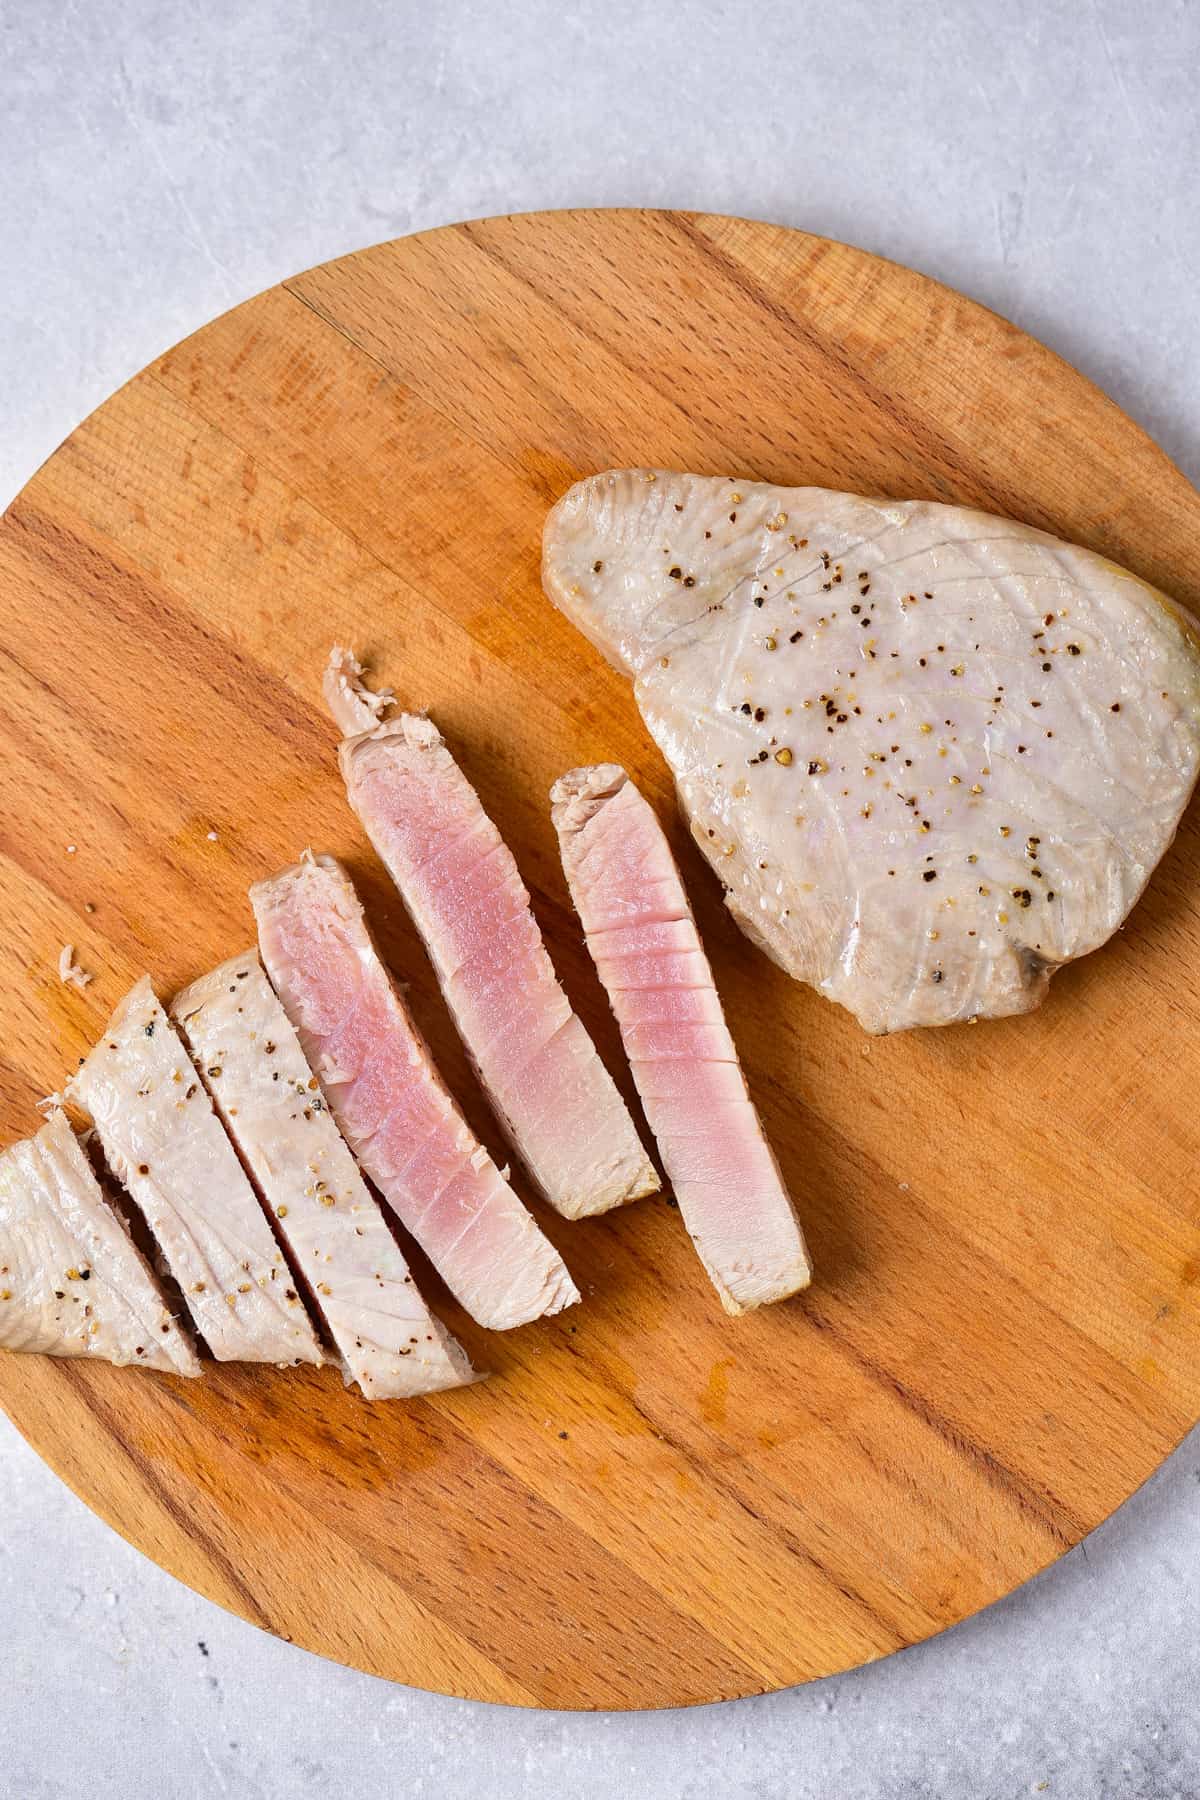 Cutting air fryer tuna steak on a wooden board.